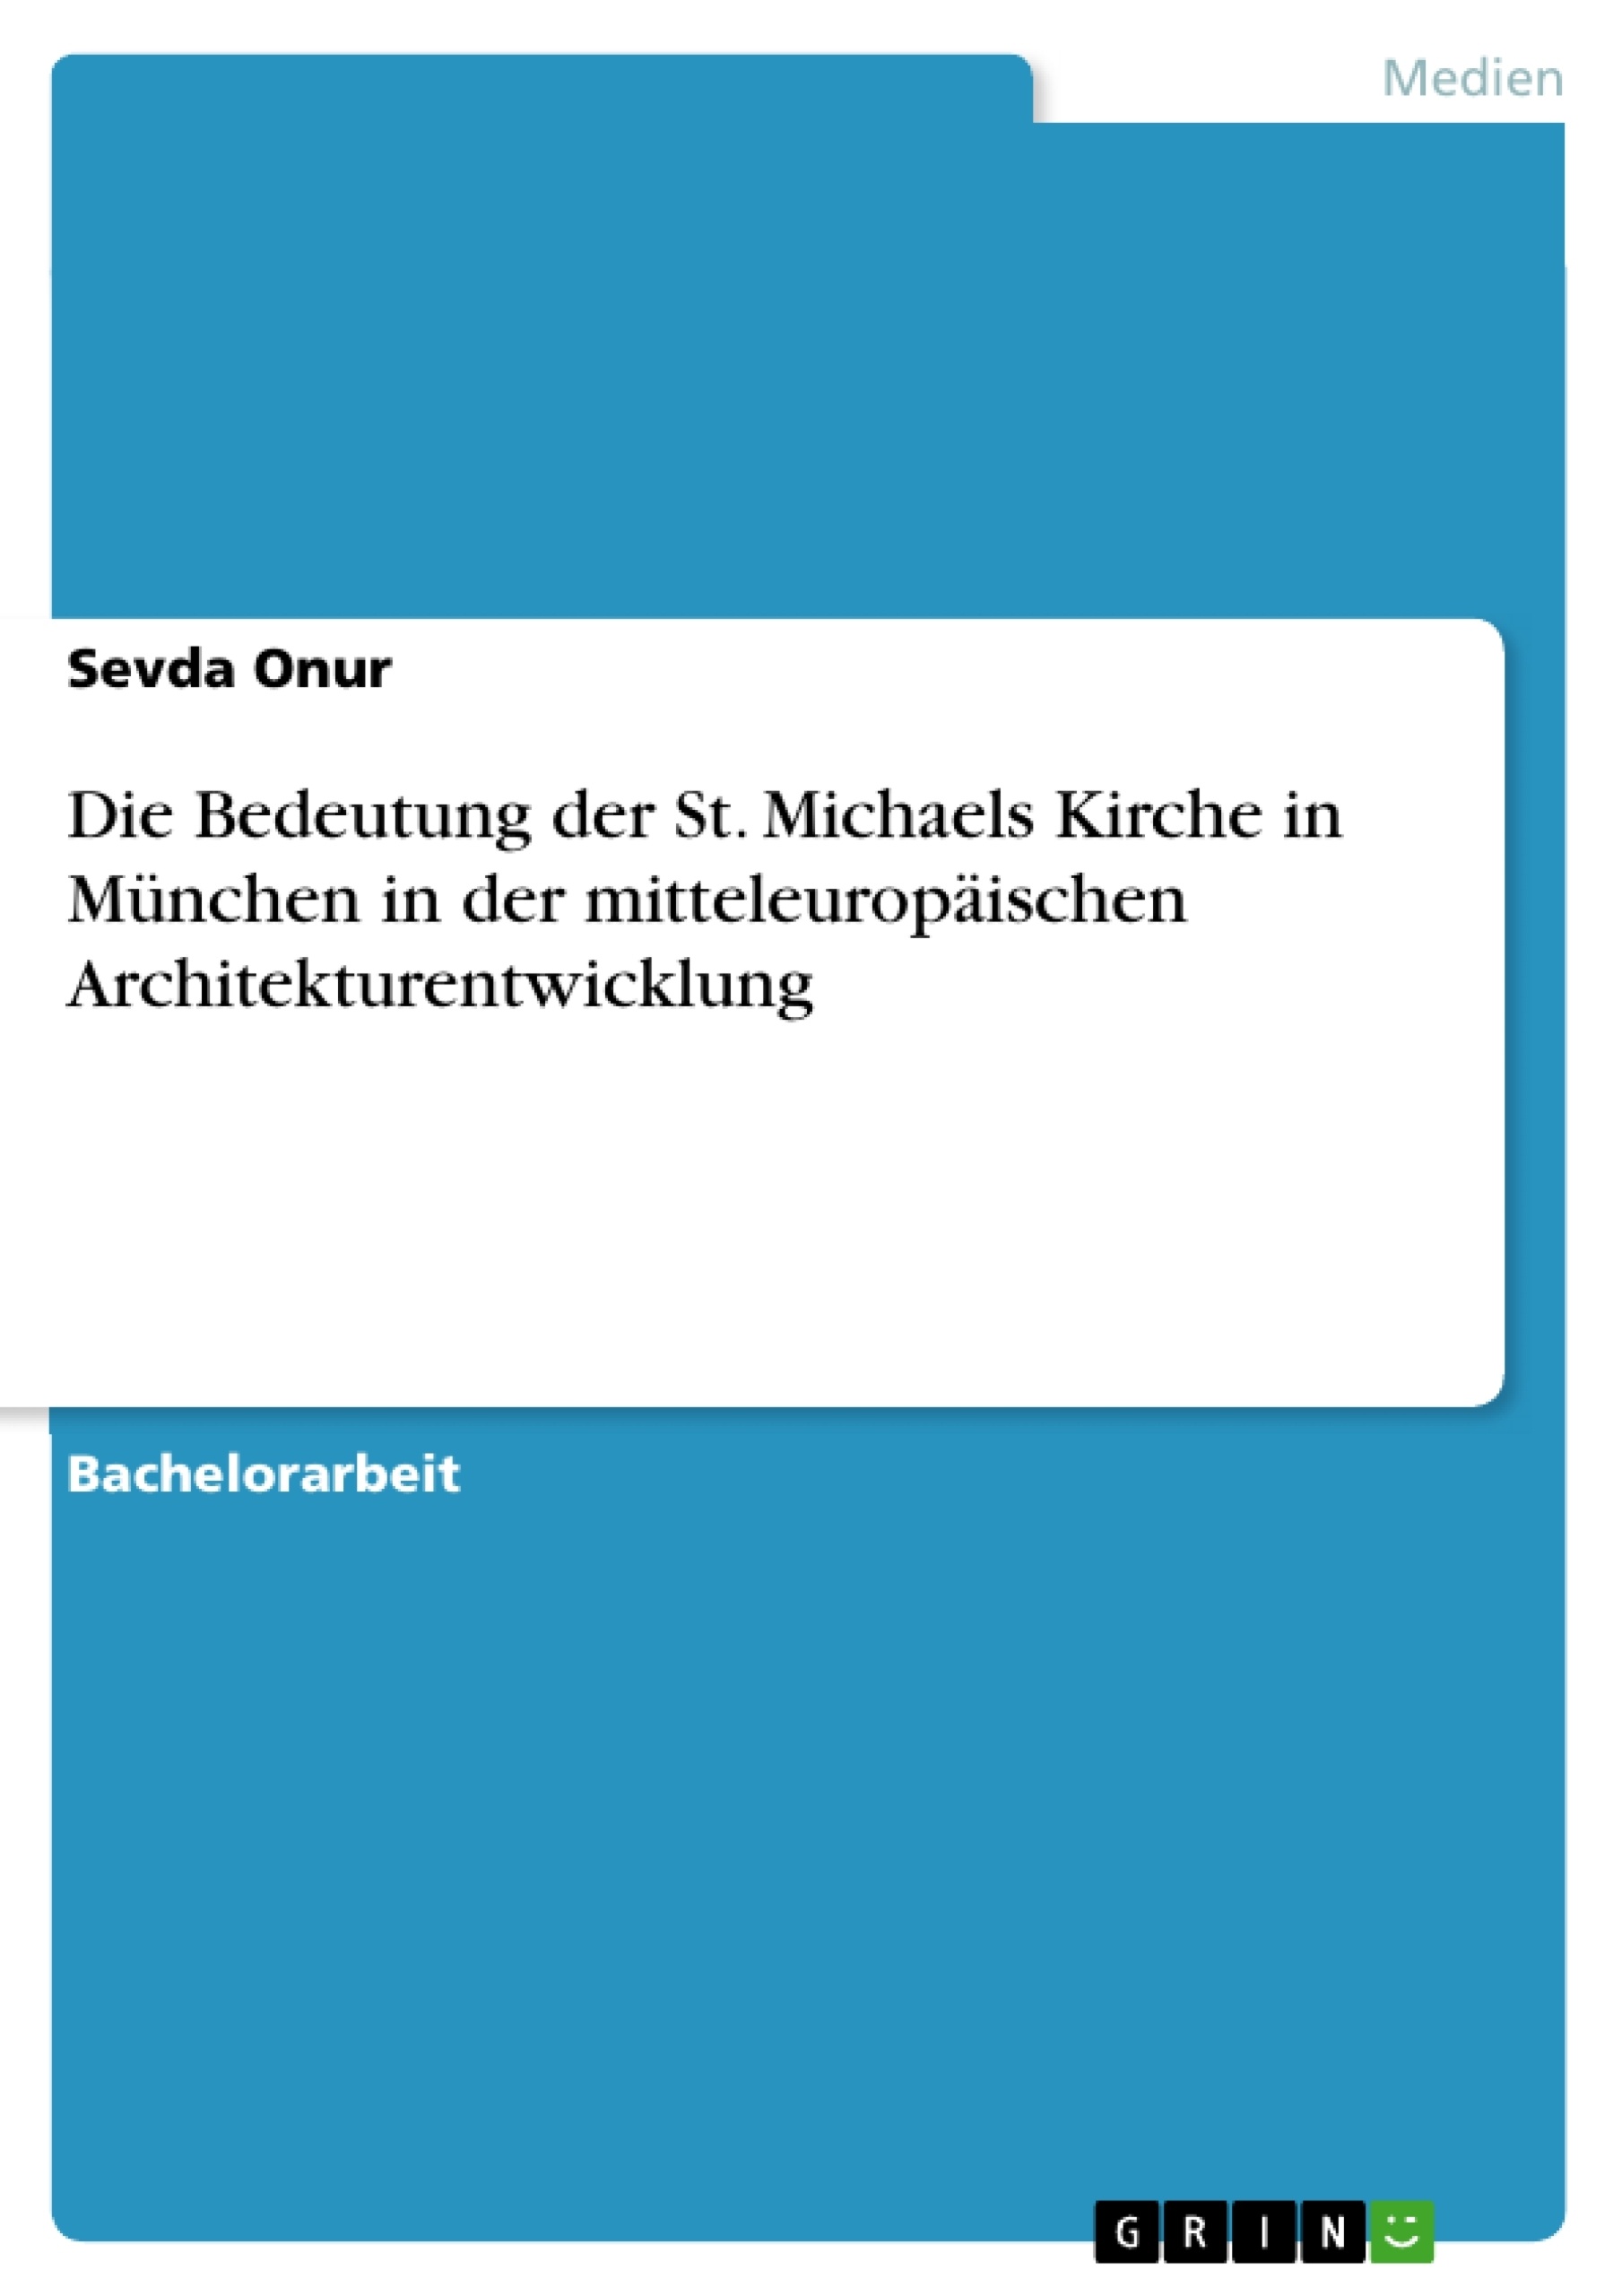 Title: Die Bedeutung der St. Michaels Kirche in München in der mitteleuropäischen Architekturentwicklung